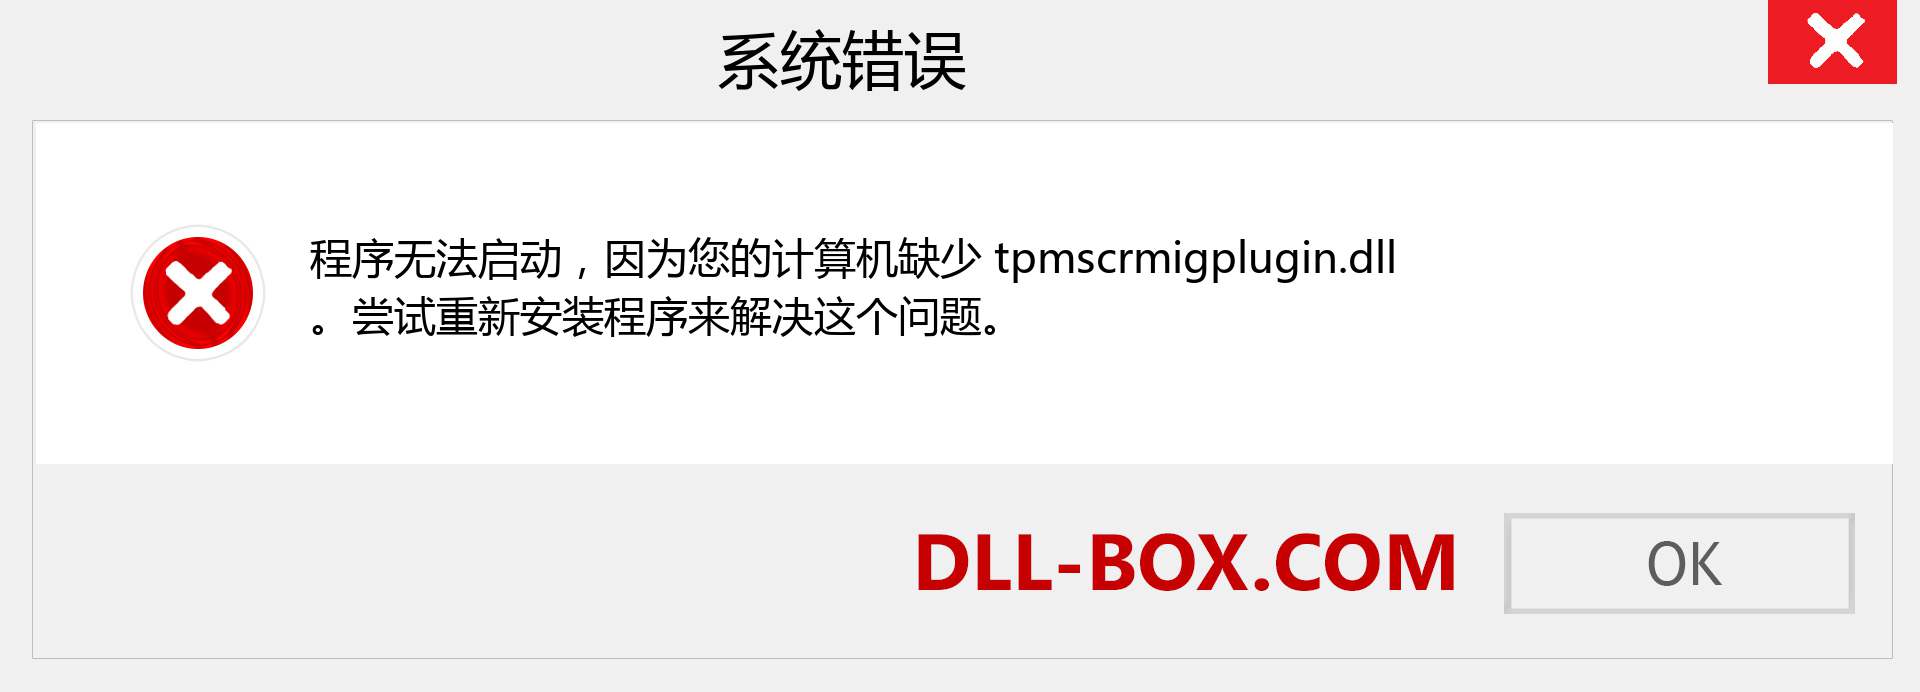 tpmscrmigplugin.dll 文件丢失？。 适用于 Windows 7、8、10 的下载 - 修复 Windows、照片、图像上的 tpmscrmigplugin dll 丢失错误